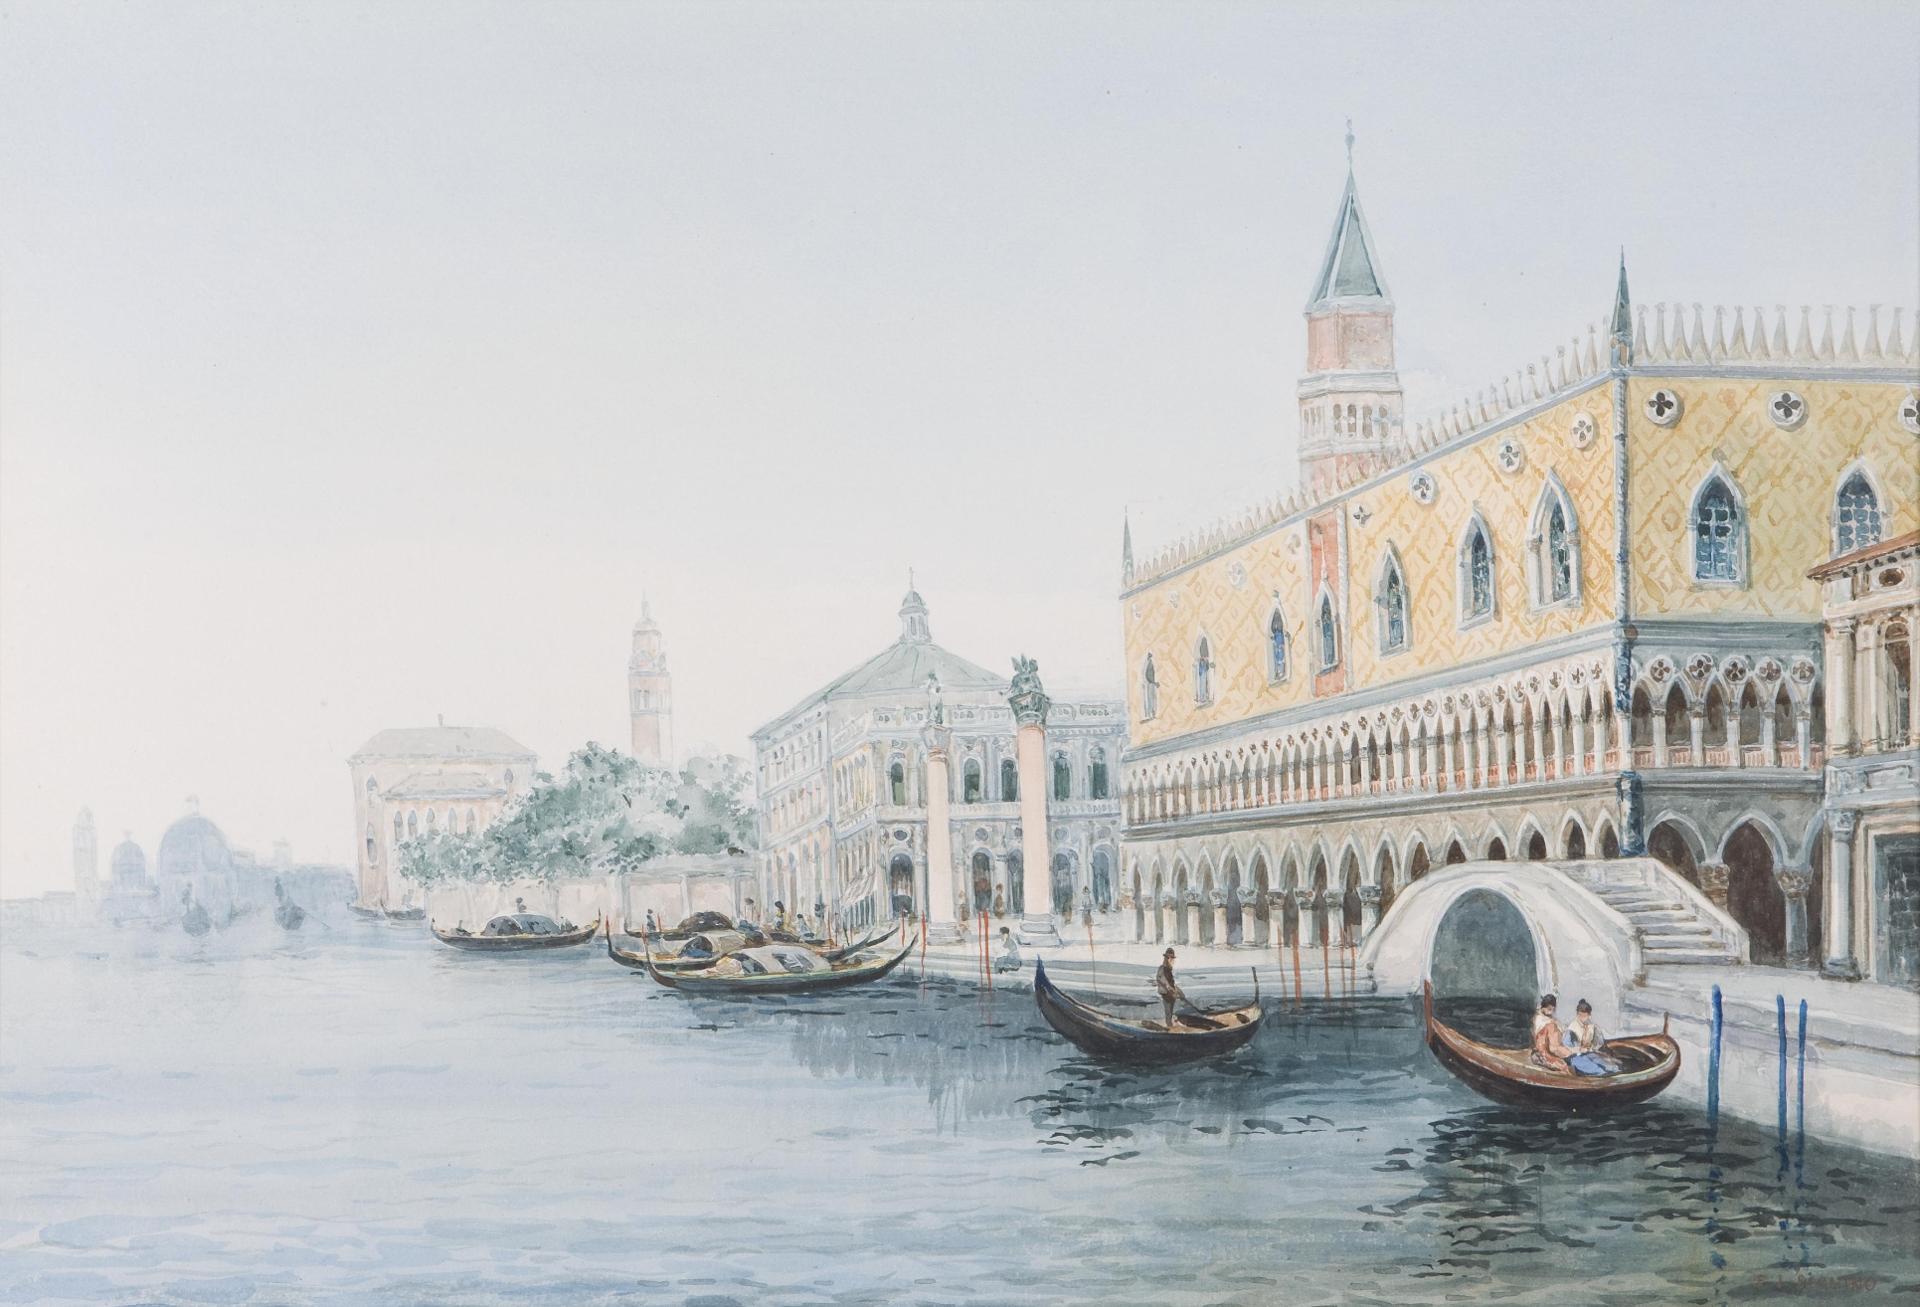 F.J. Seguino (1920) - The Molo, Venice; Piazza San Marco; Rialto Bridge